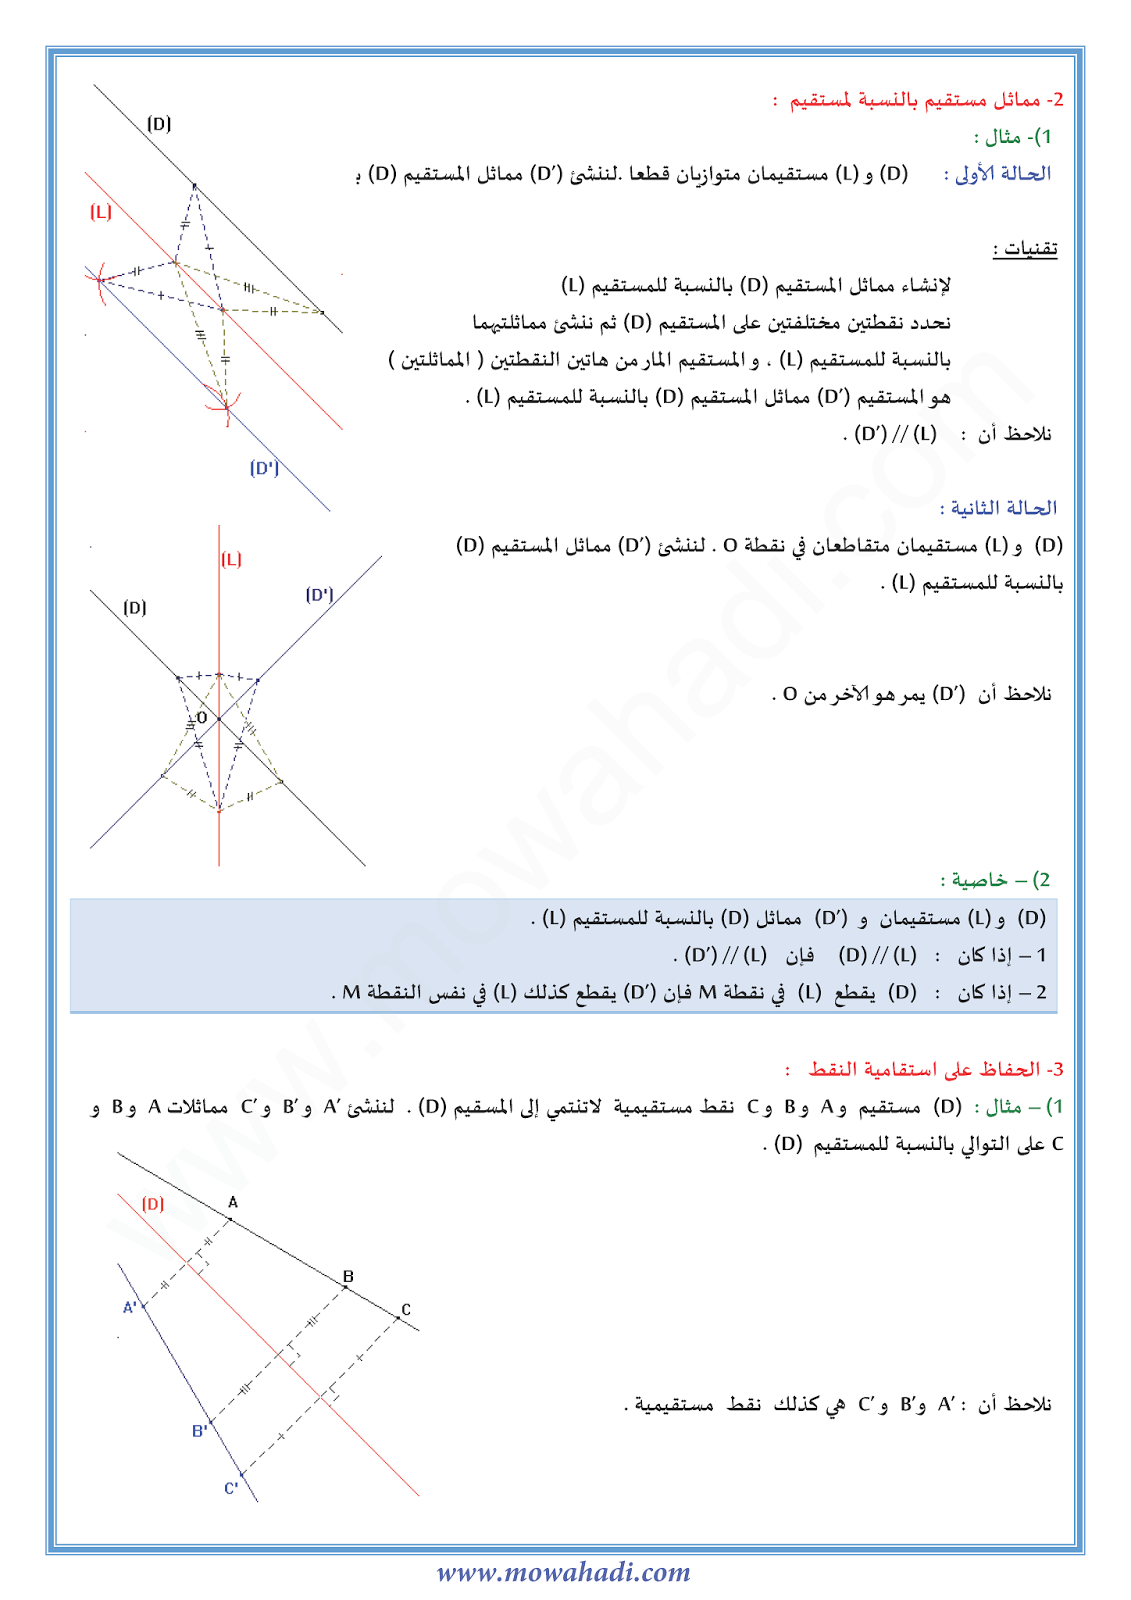 درس التماثل المحوري للسنة الثانية اعدادي في مادة الرياضيات 2-cours-math2_003